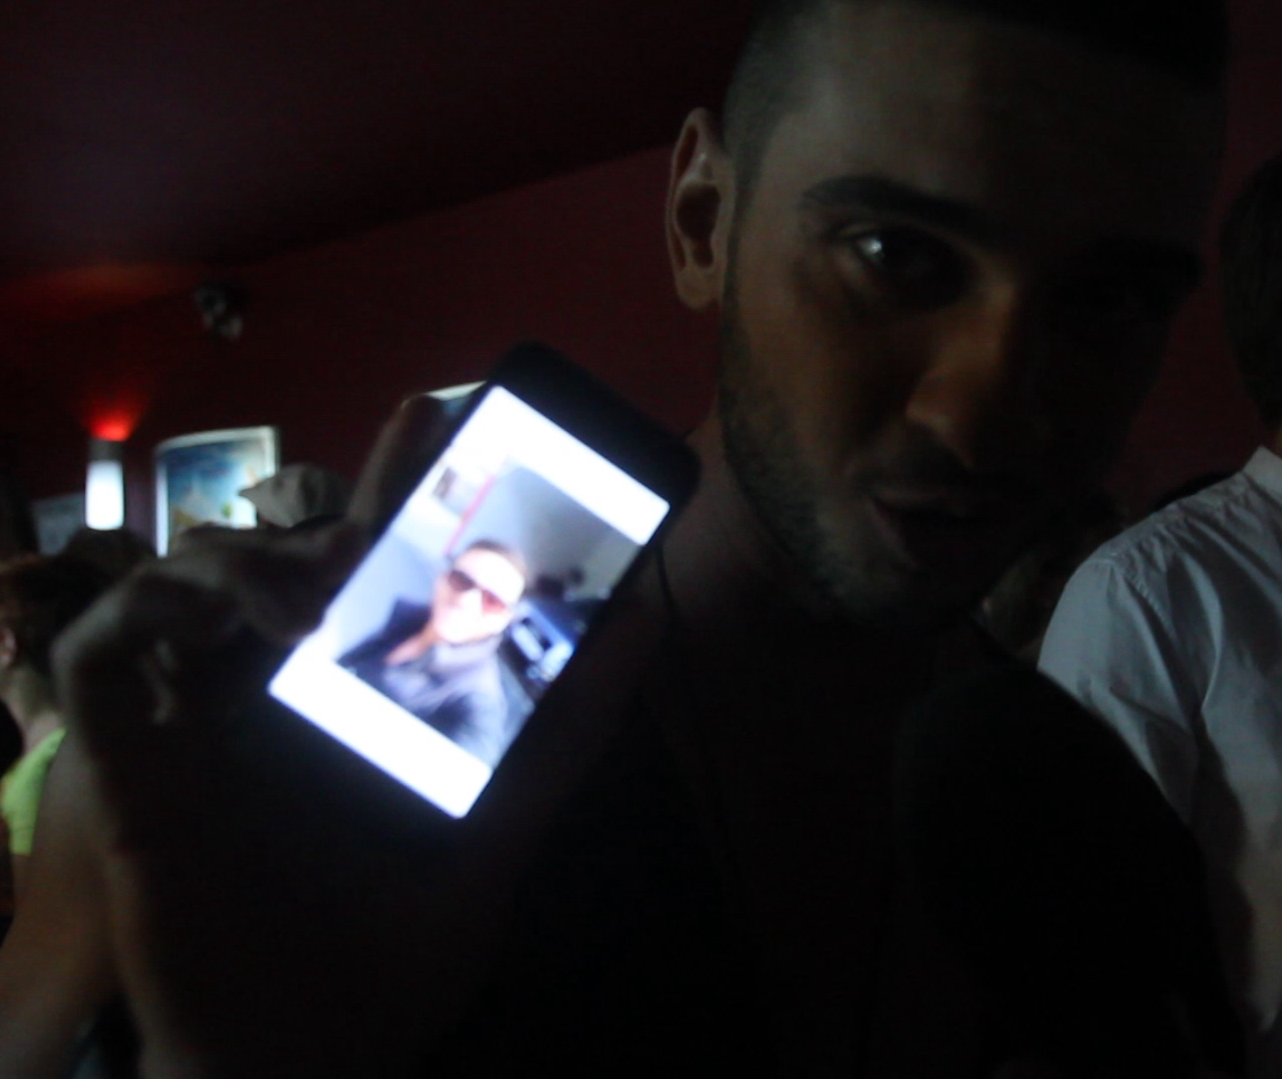 Dorian Popa ne-a aratat cel mai recent selfie pe care il avea in telefon